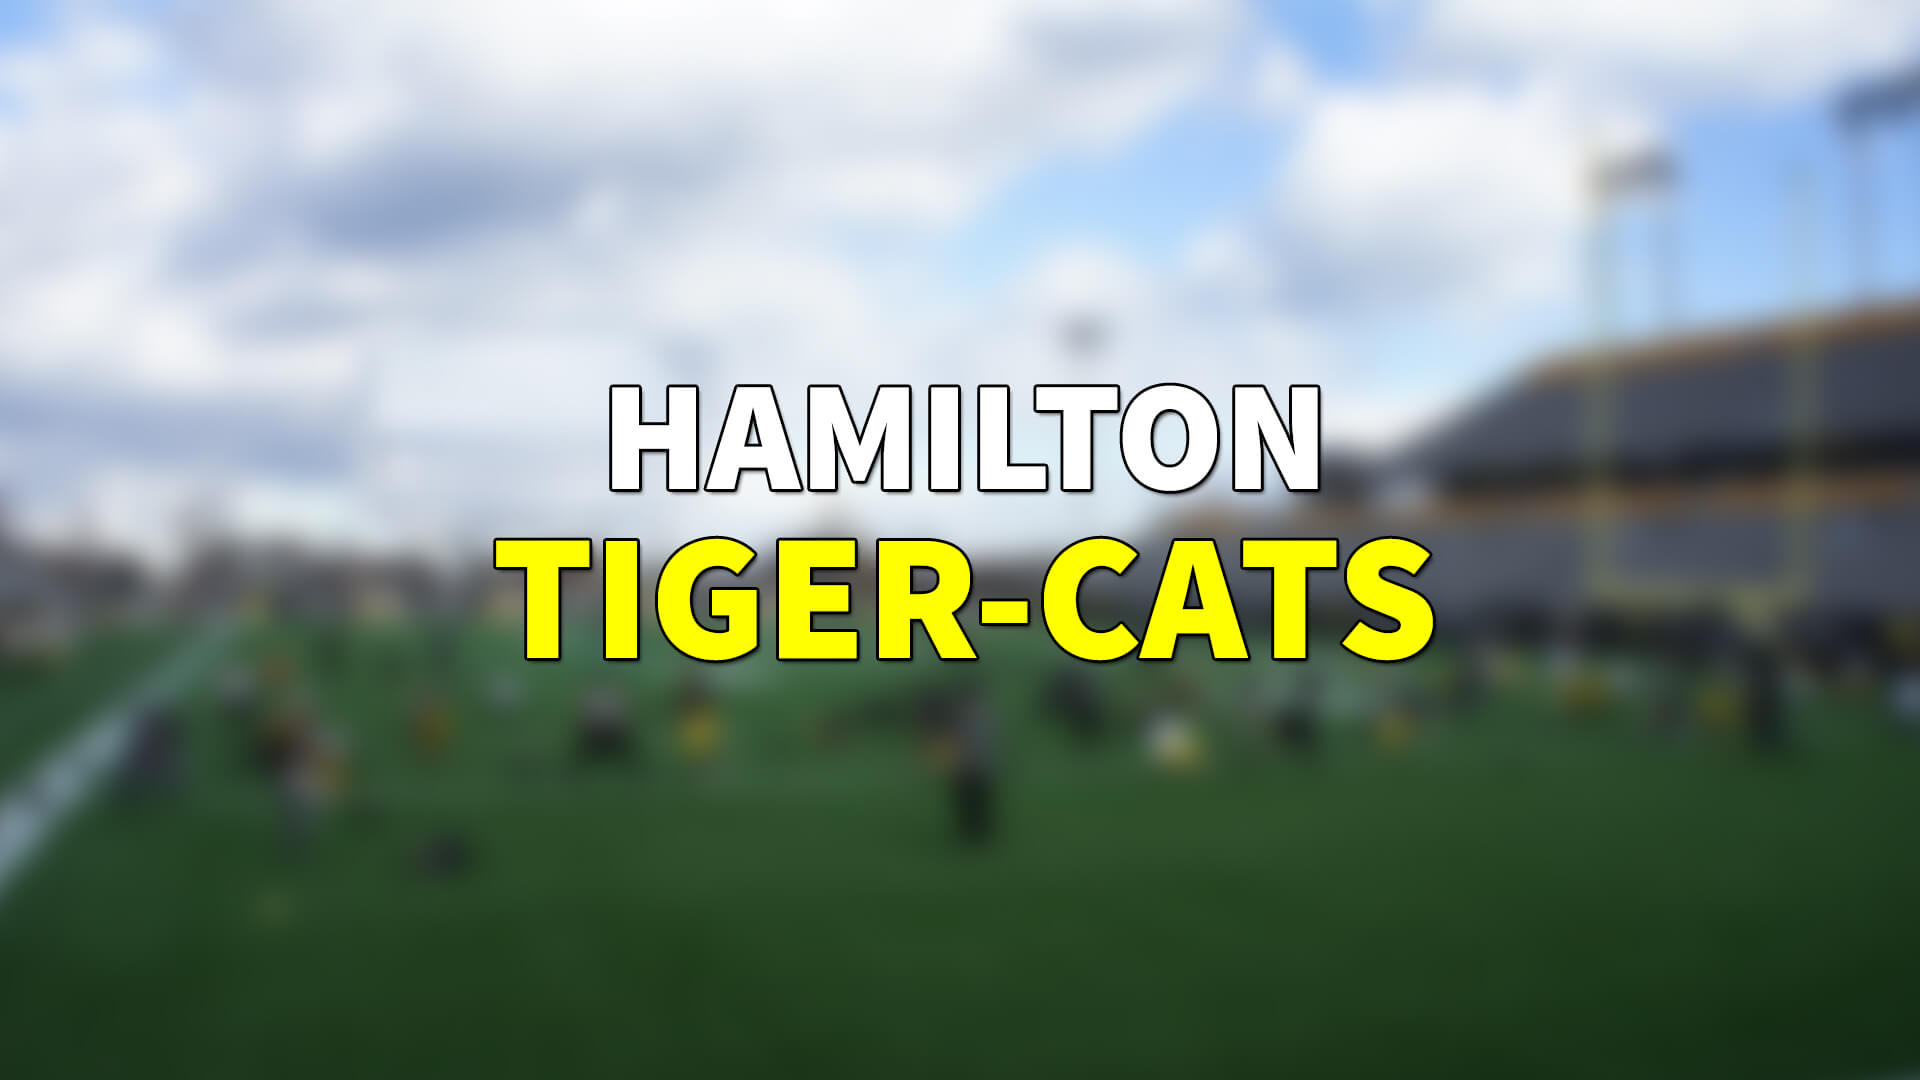 Tiger-Cats Frankie Williams ile Kontratı Uzattı | Korumalı Futbol Türkiye